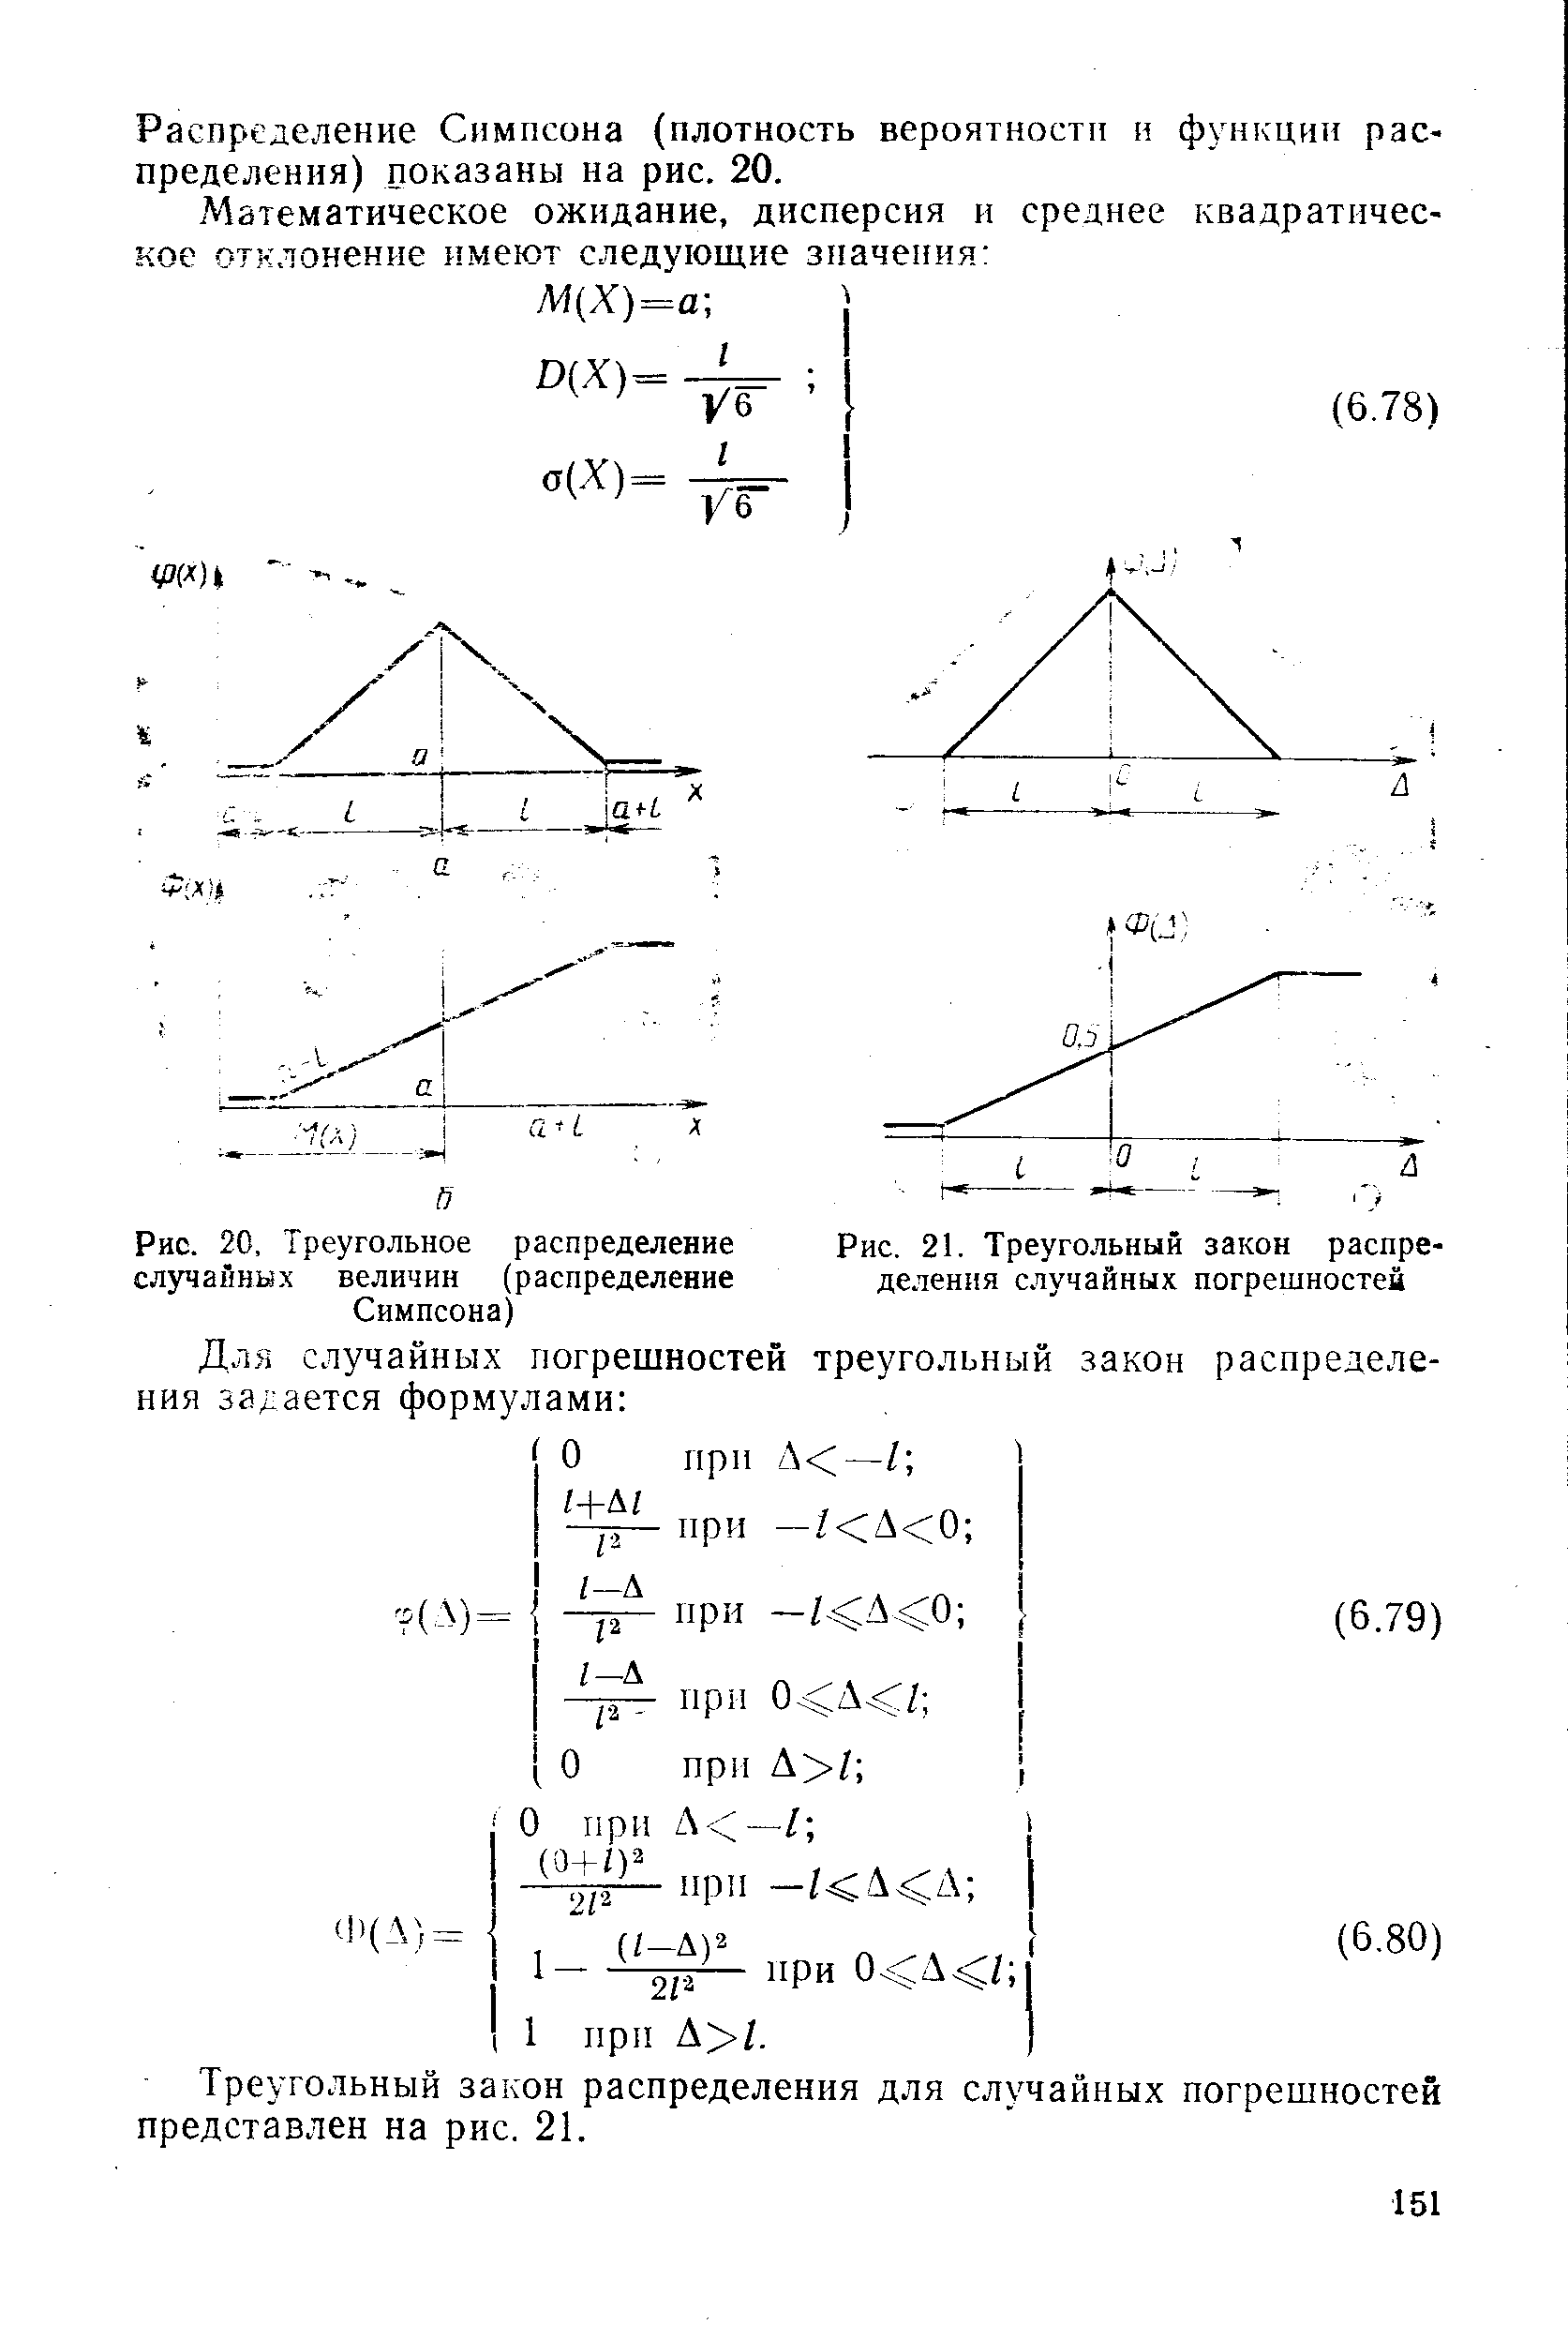 Рис. 20, Треугольное <a href="/info/262278">распределение случайных величин</a> (распределение Симпсона)
